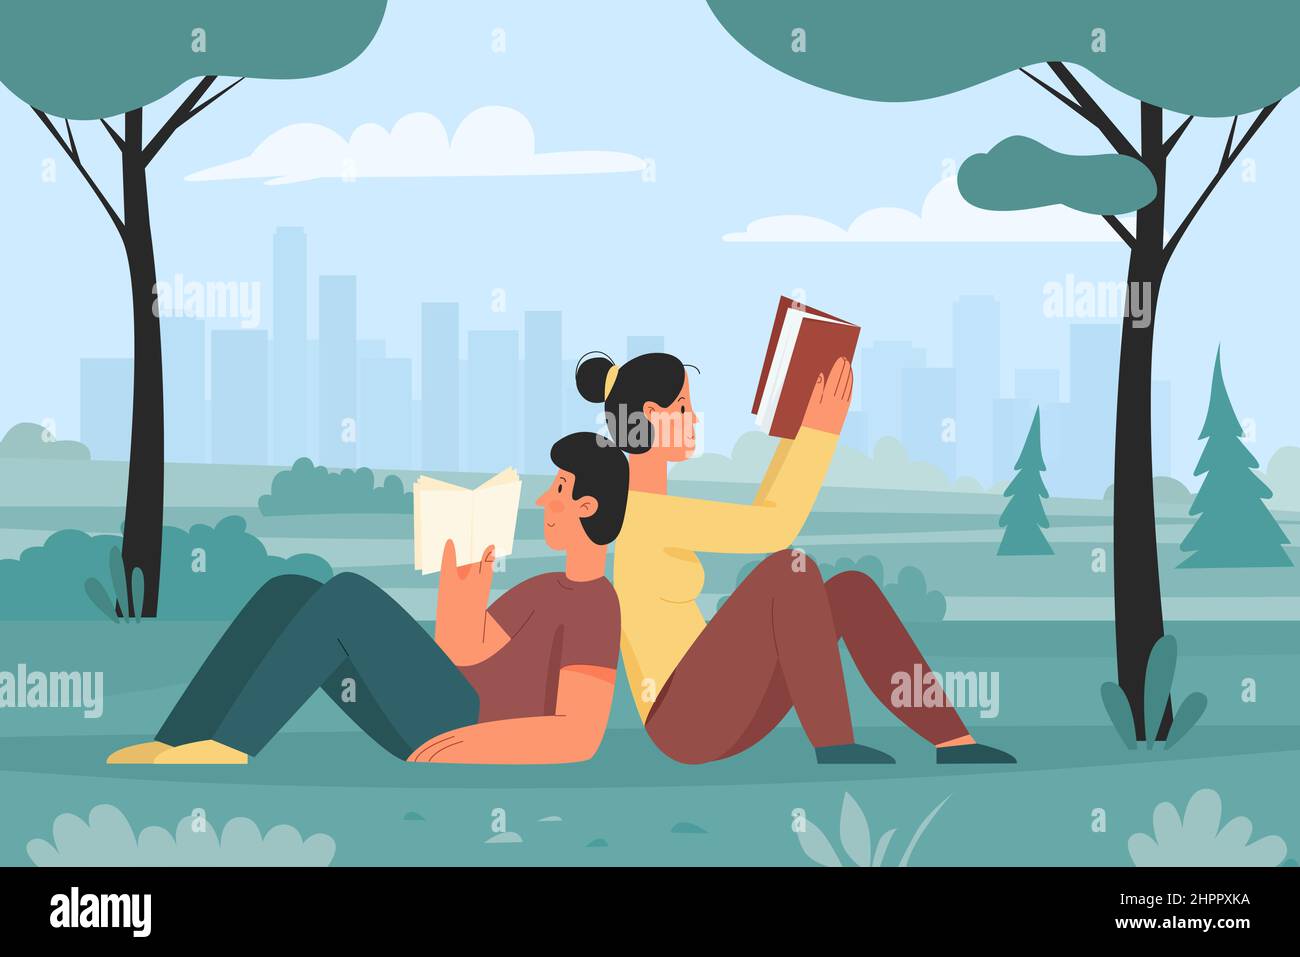 Garçon et fille se détendant et lisant des livres dans le parc. Illustration vectorielle plate d'activités de loisirs éducatives en extérieur Illustration de Vecteur